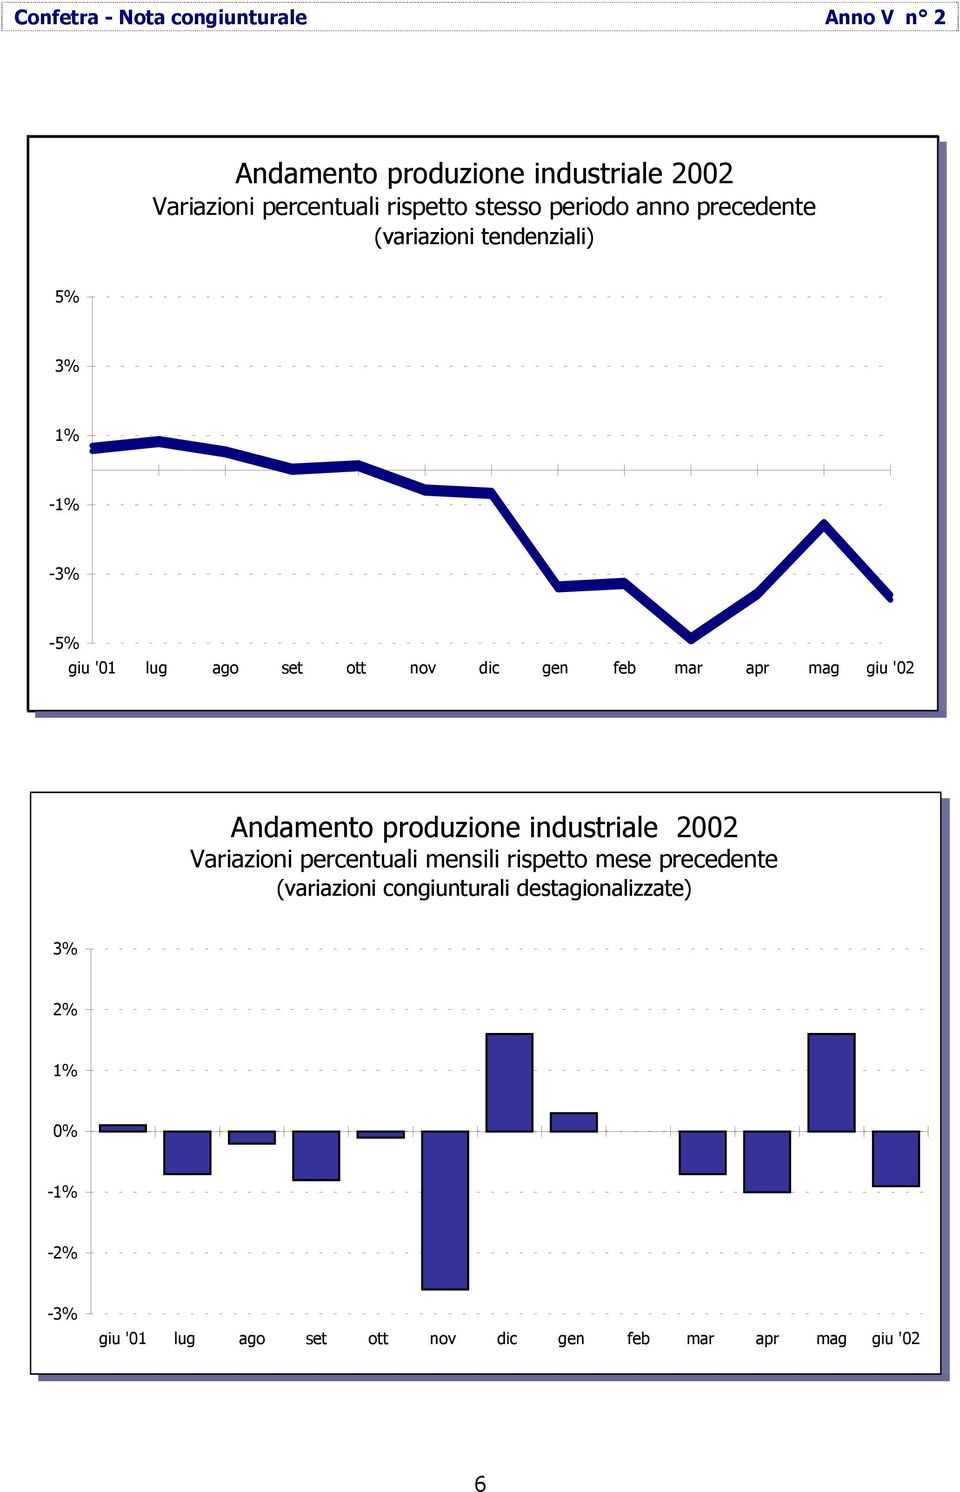 Andamento produzione industriale 2002 Variazioni percentuali mensili rispetto mese precedente (variazioni